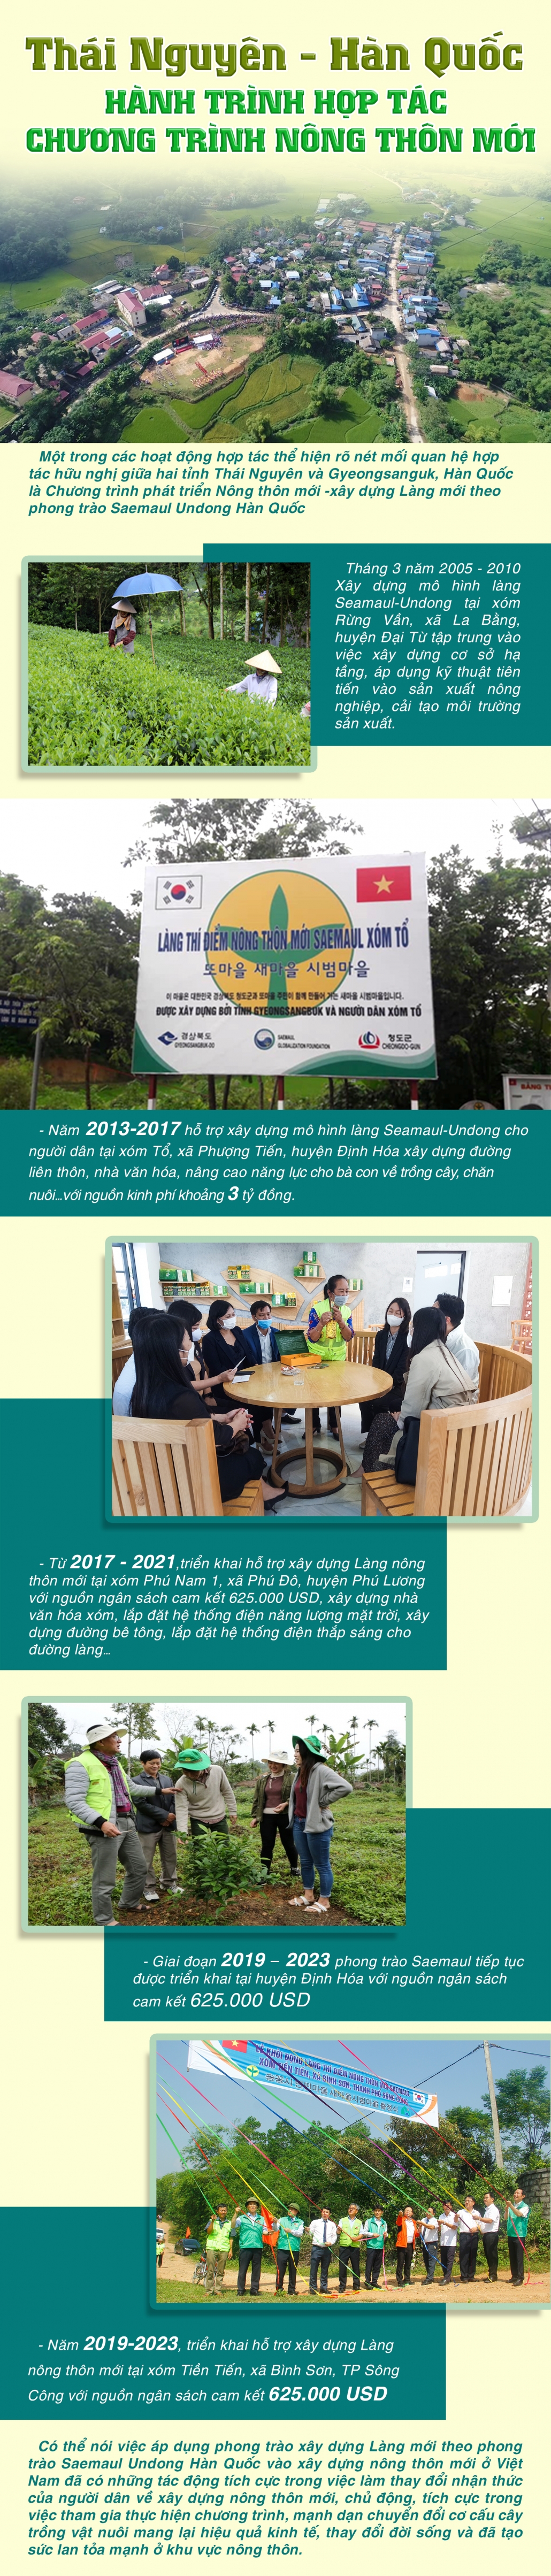 [Infographic] Thái Nguyên - Hàn Quốc hành trình hợp tác chương trình xây dựng nông thôn mới